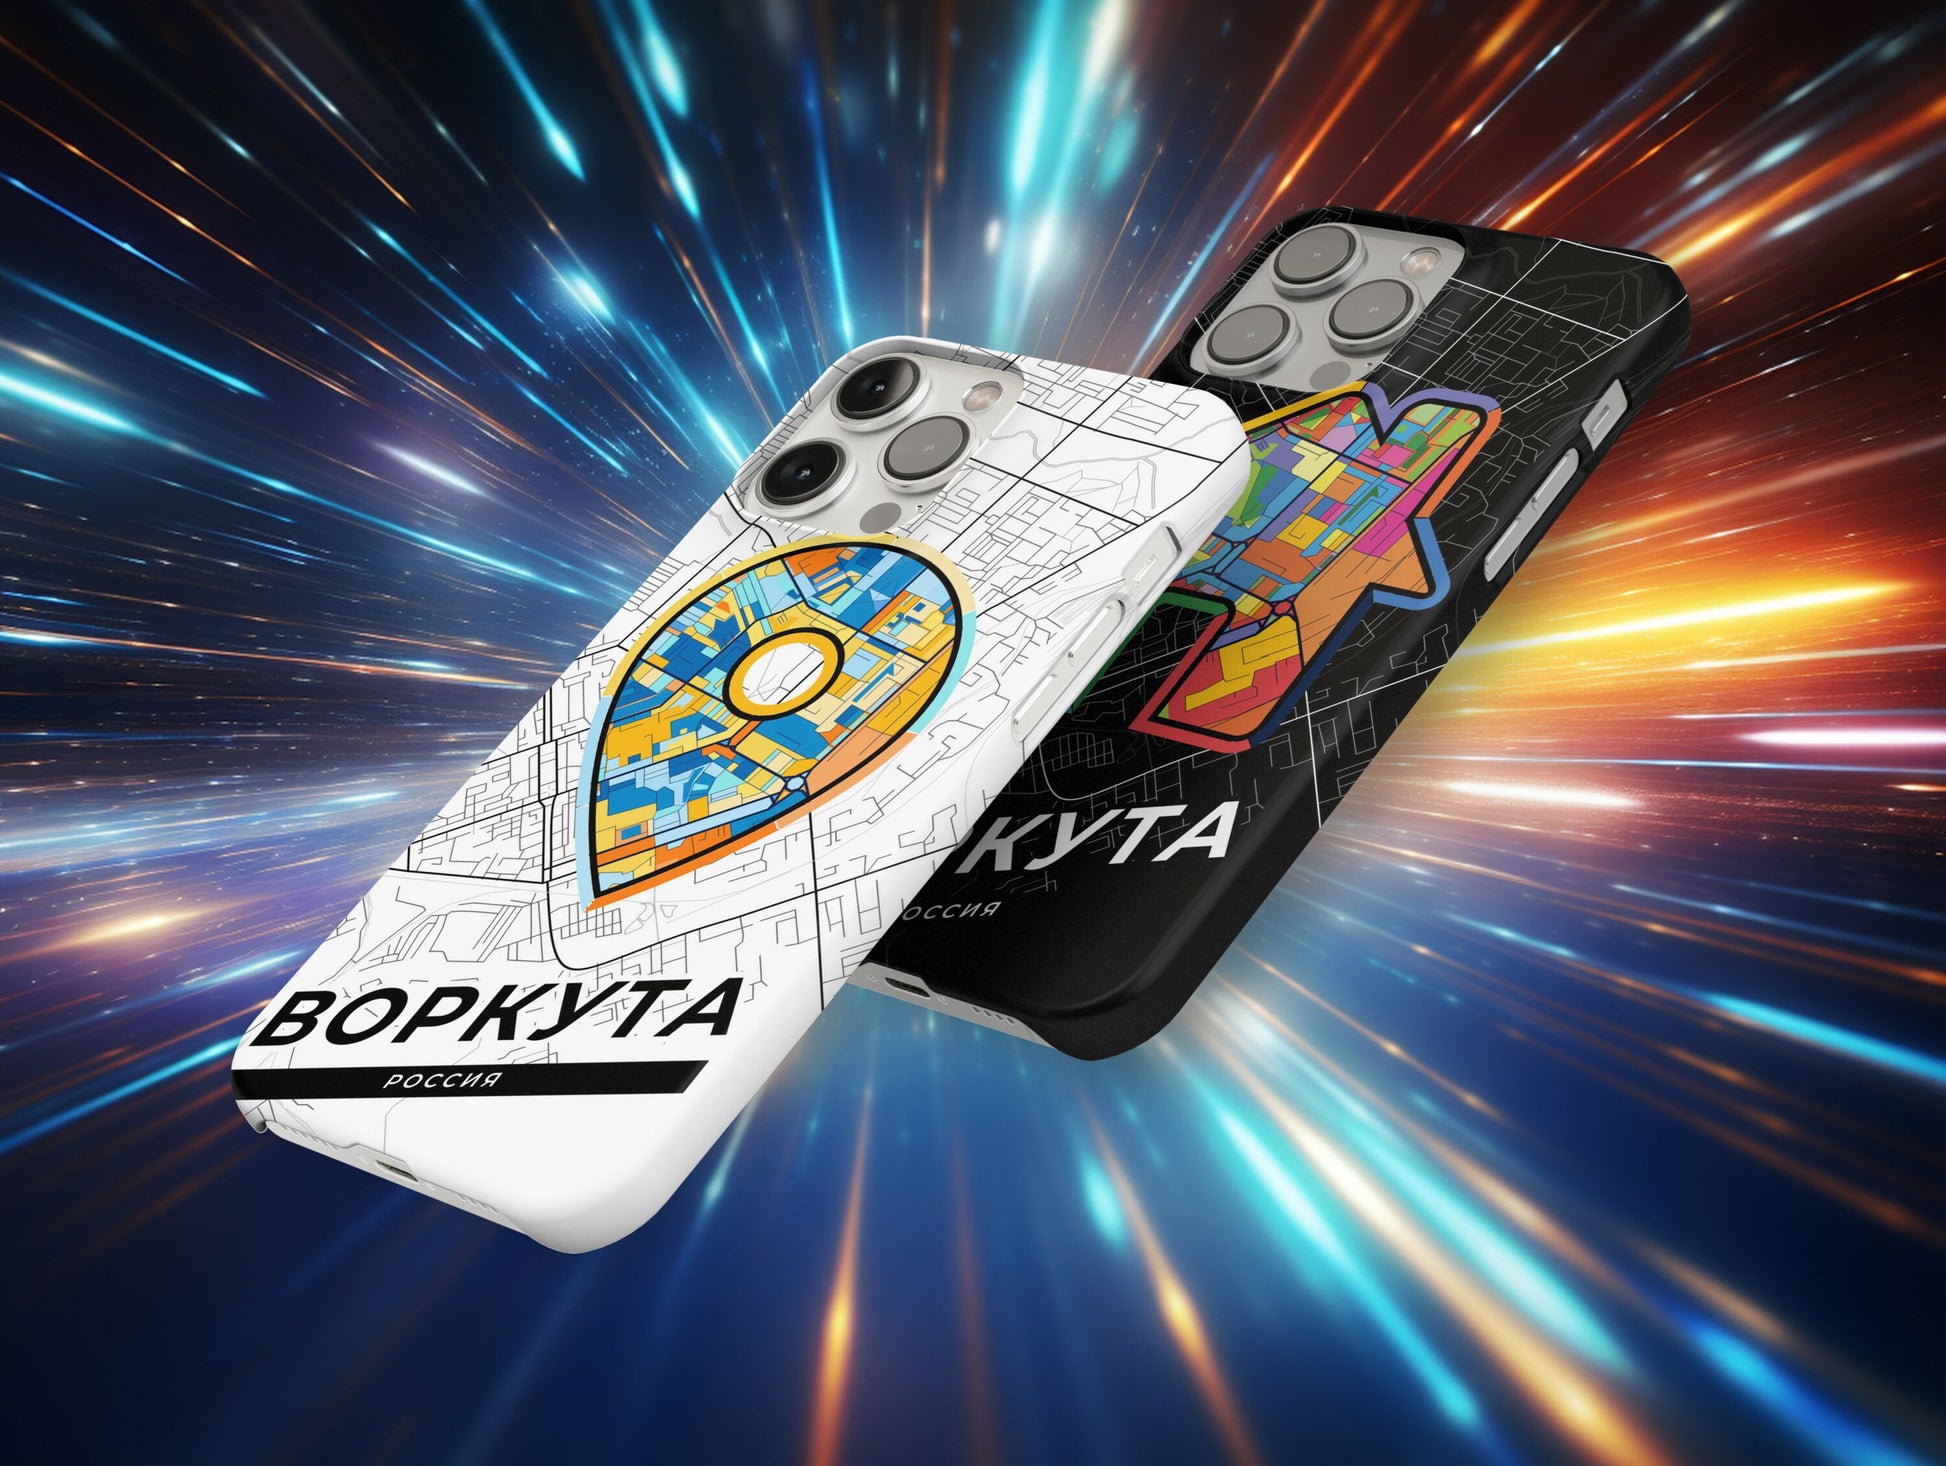 Vorkuta Russia slim phone case with colorful icon